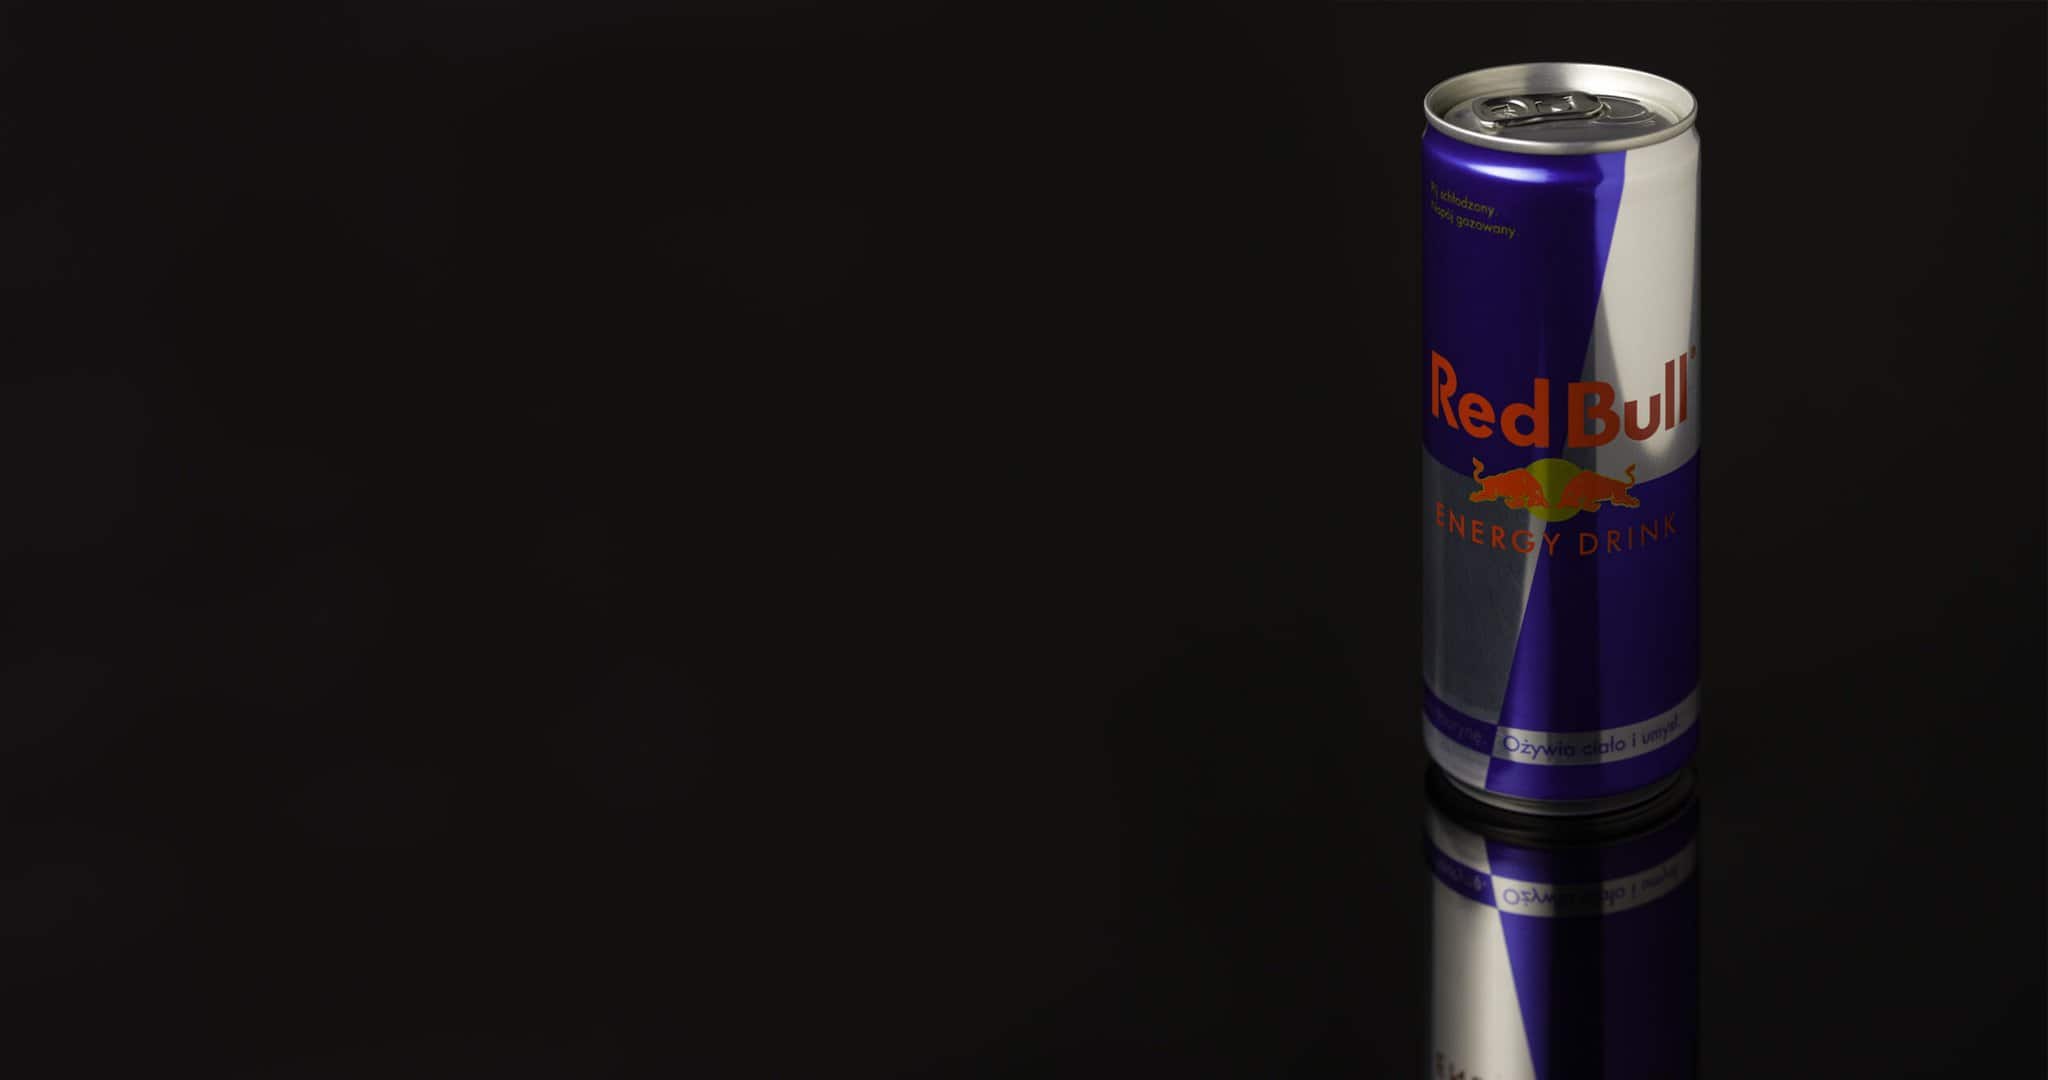 Red Bull, tárgyfotózás, termékfotózás